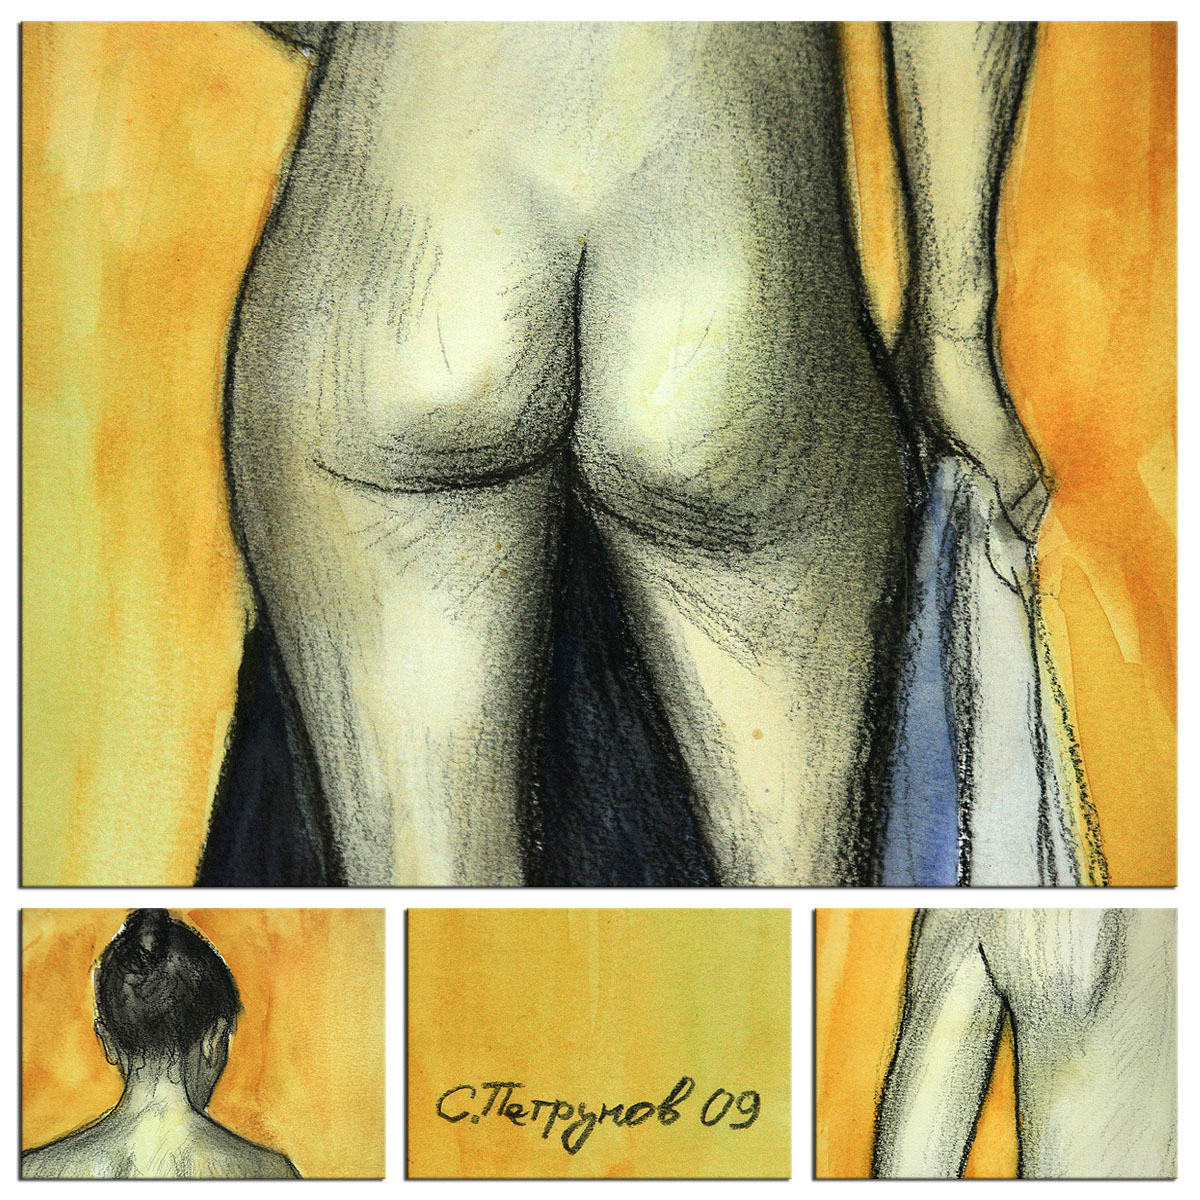 Aquarellmalerei, Stefan Petrunov: "Nude 3" (A)